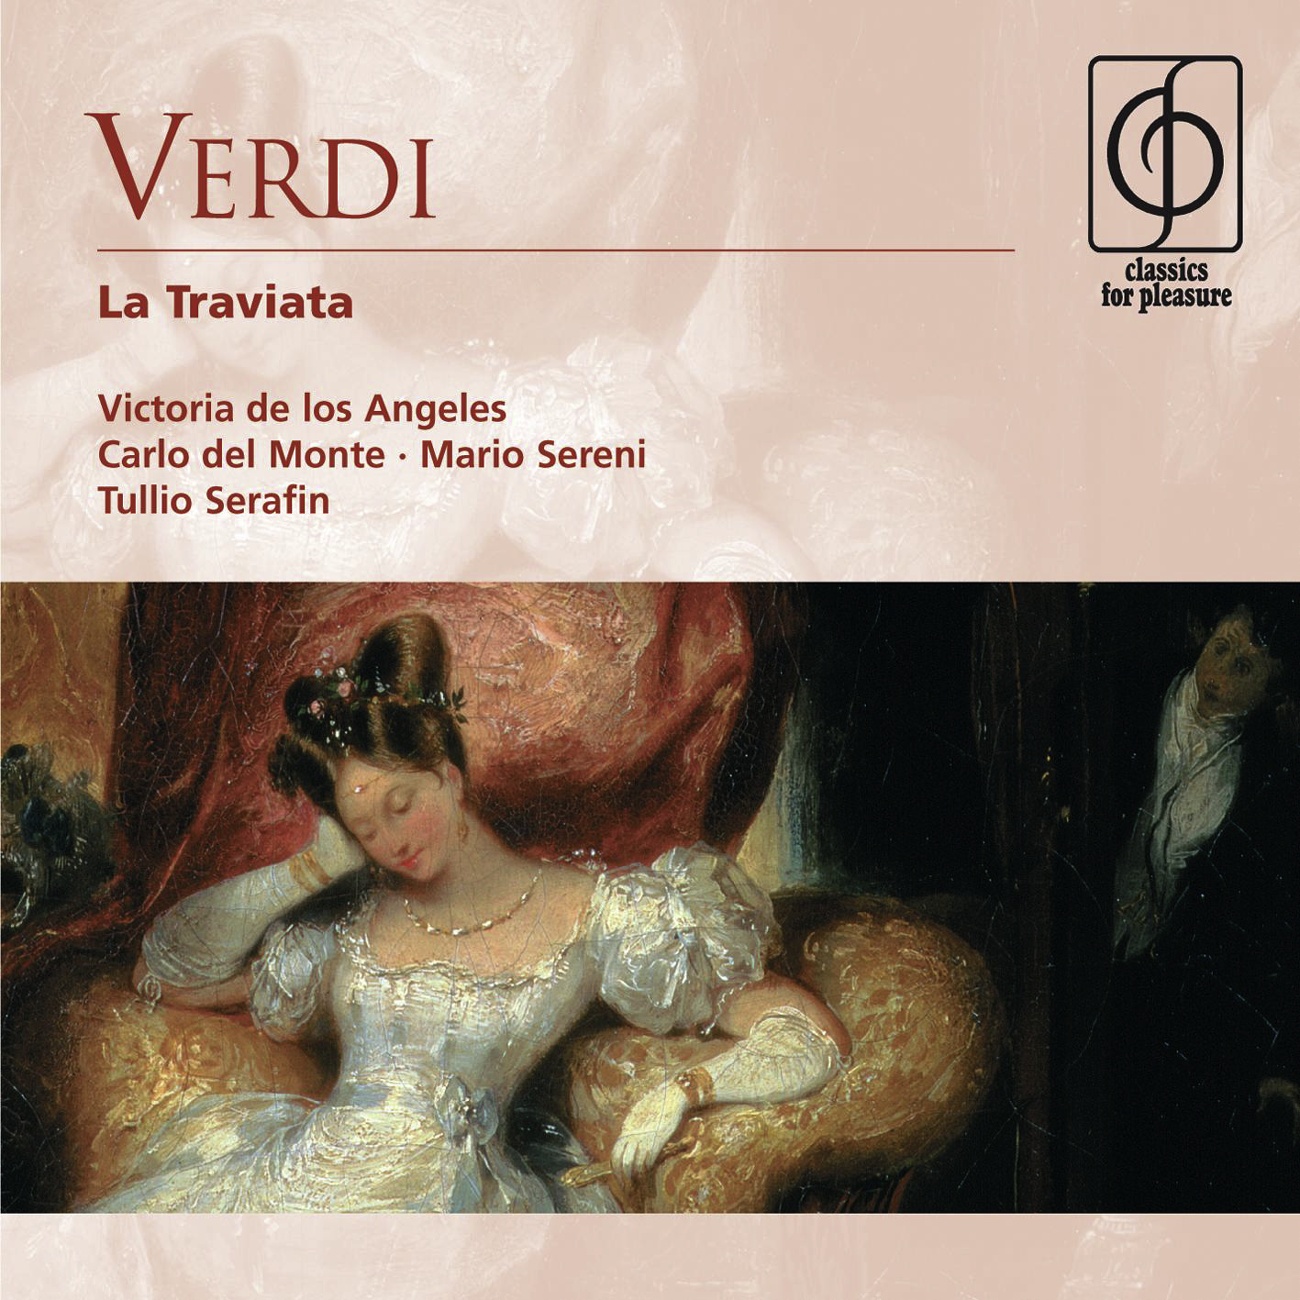 La Traviata ['appendix' with missing tracks from Serafin 1992 drm] (1992 Digital Remaster): Invitato a qui seguirmi (Violetta, Alfredo, Flora, Gastone, Baron, Guests)